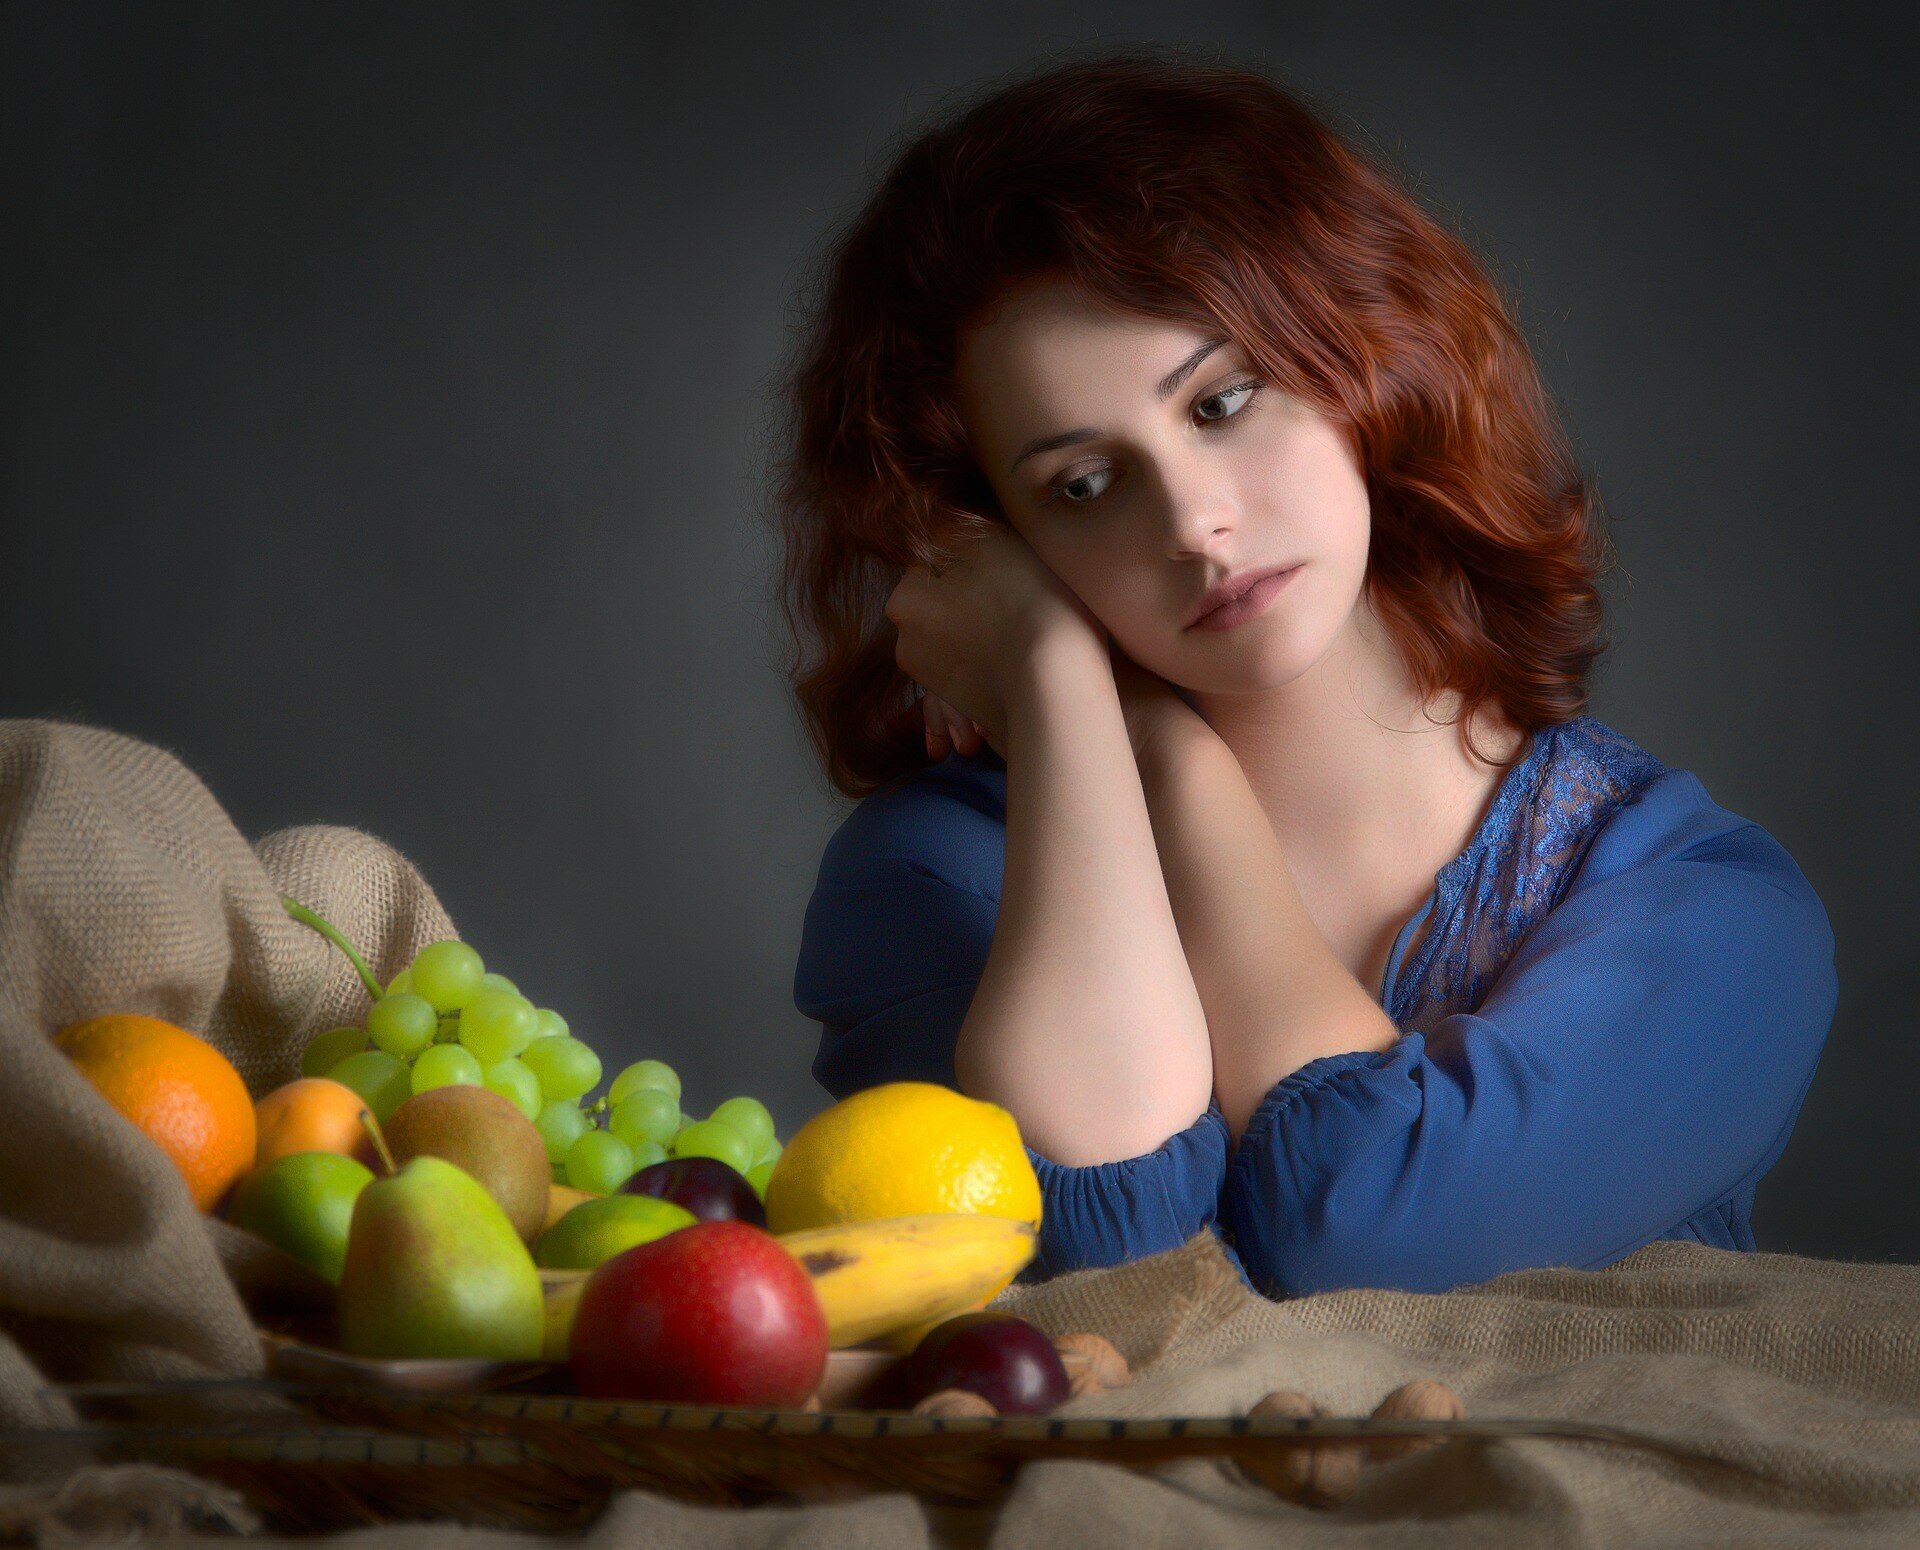 Коли найкраще їсти фрукти: до або після їди